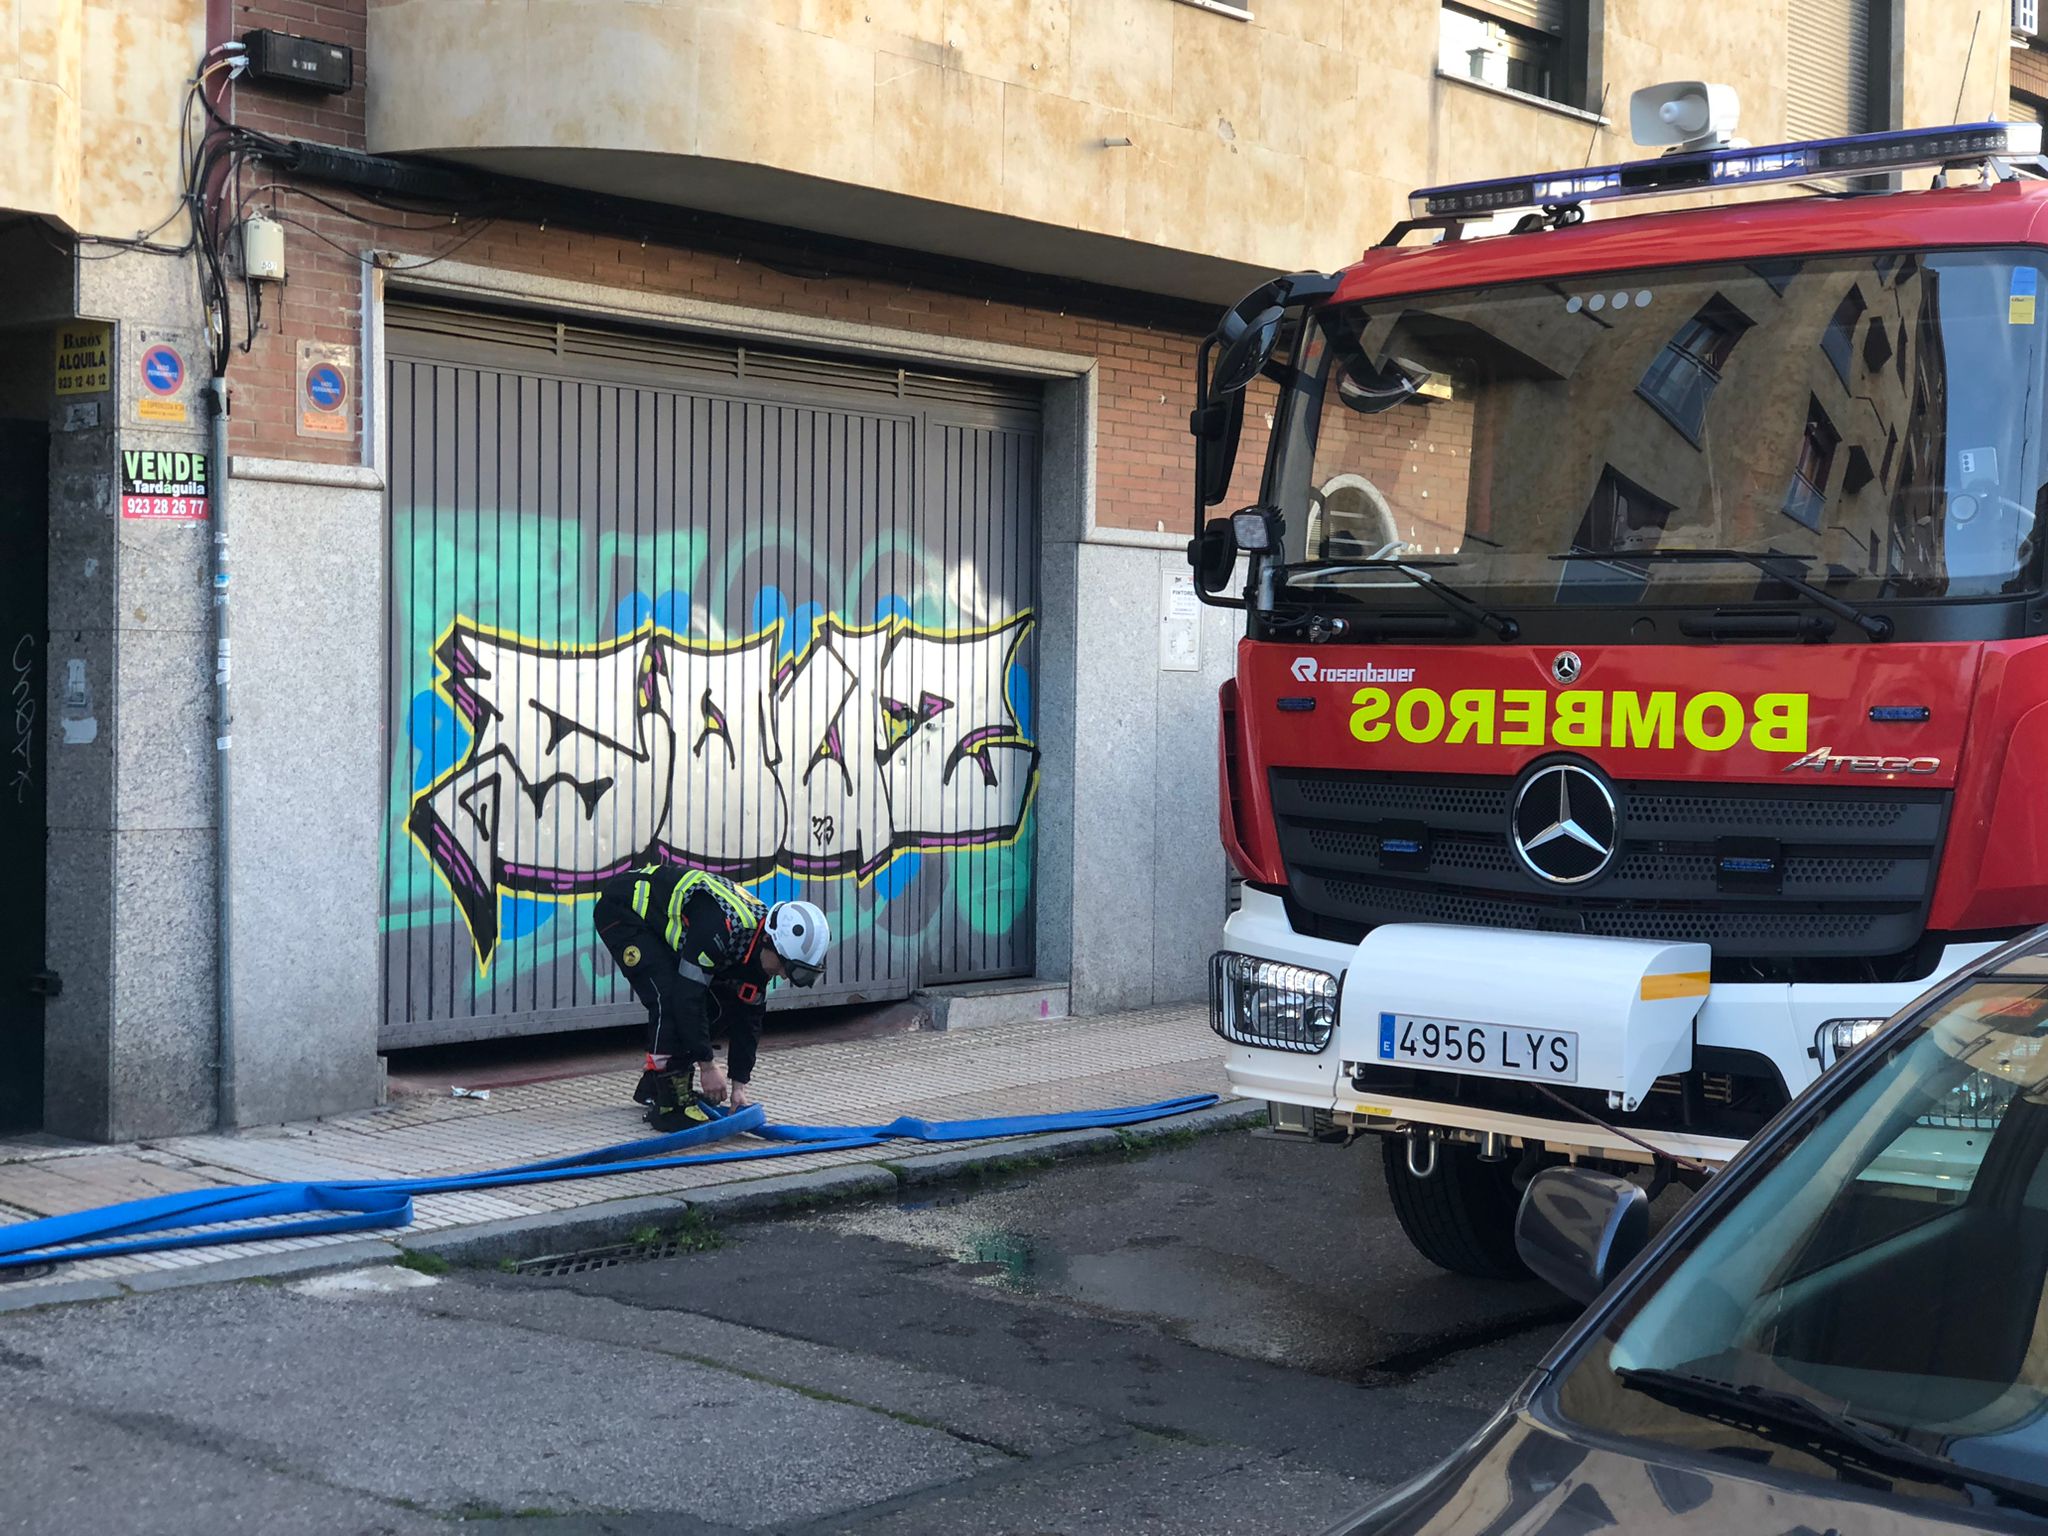 GALERÍA | Incendio en una vivienda de la calle Espronceda